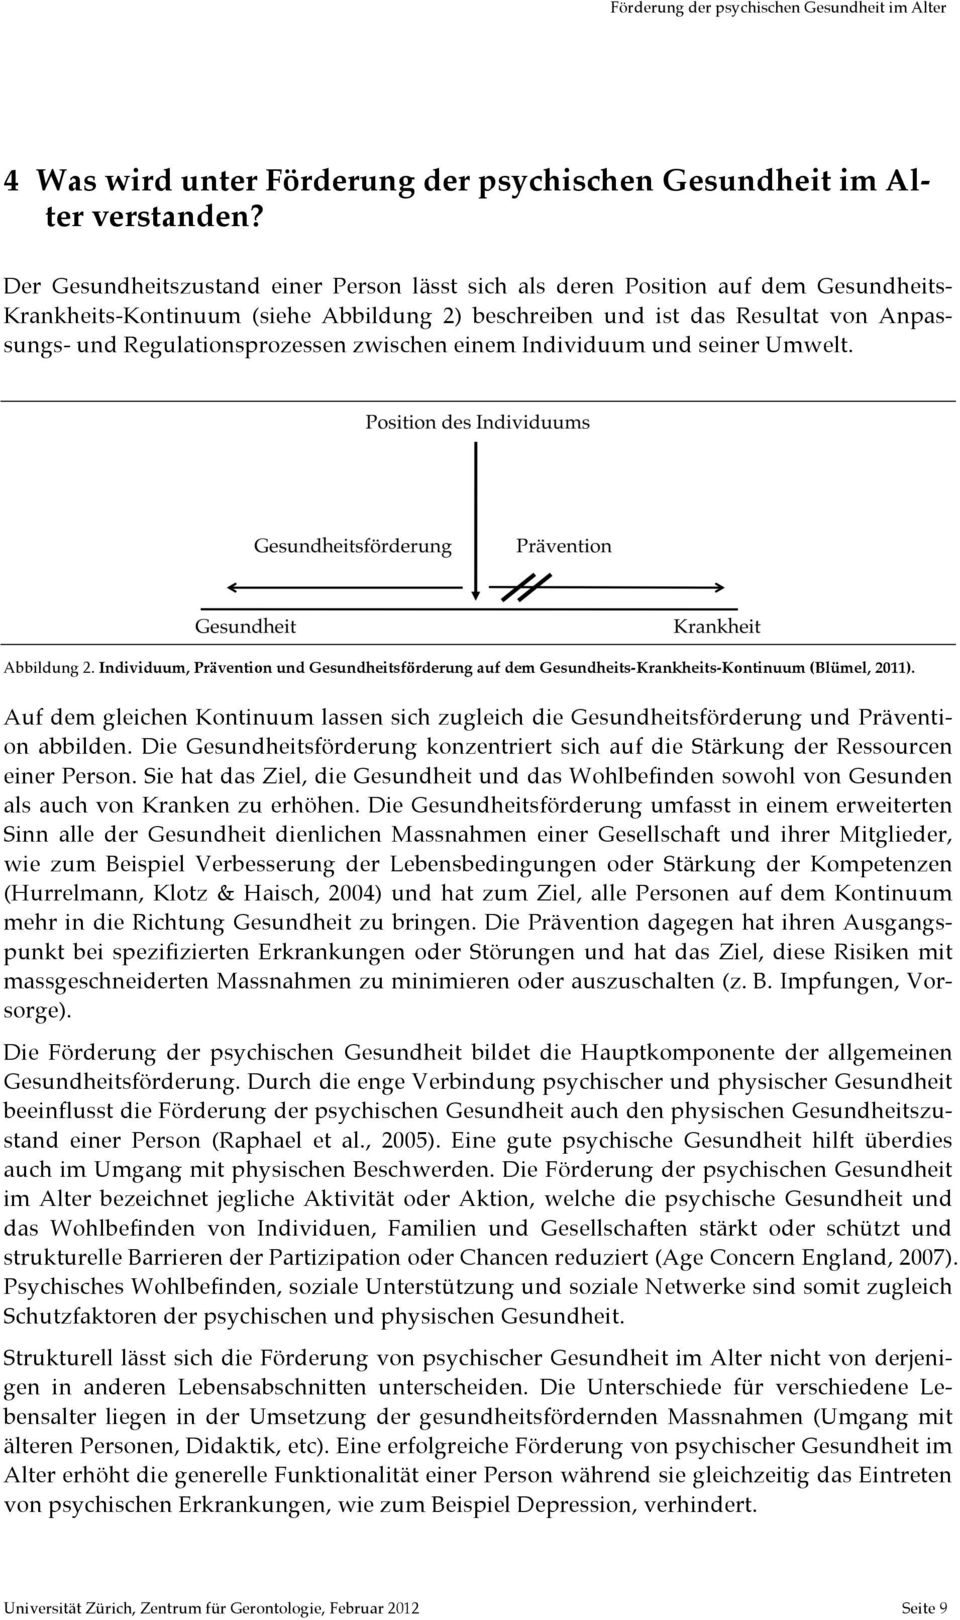 Regulationsprozessen zwischen einem Individuum und seiner Umwelt. Abbildung 2. Individuum, Prävention und Gesundheitsförderung auf dem Gesundheits-Krankheits-Kontinuum (Blümel, 2011).